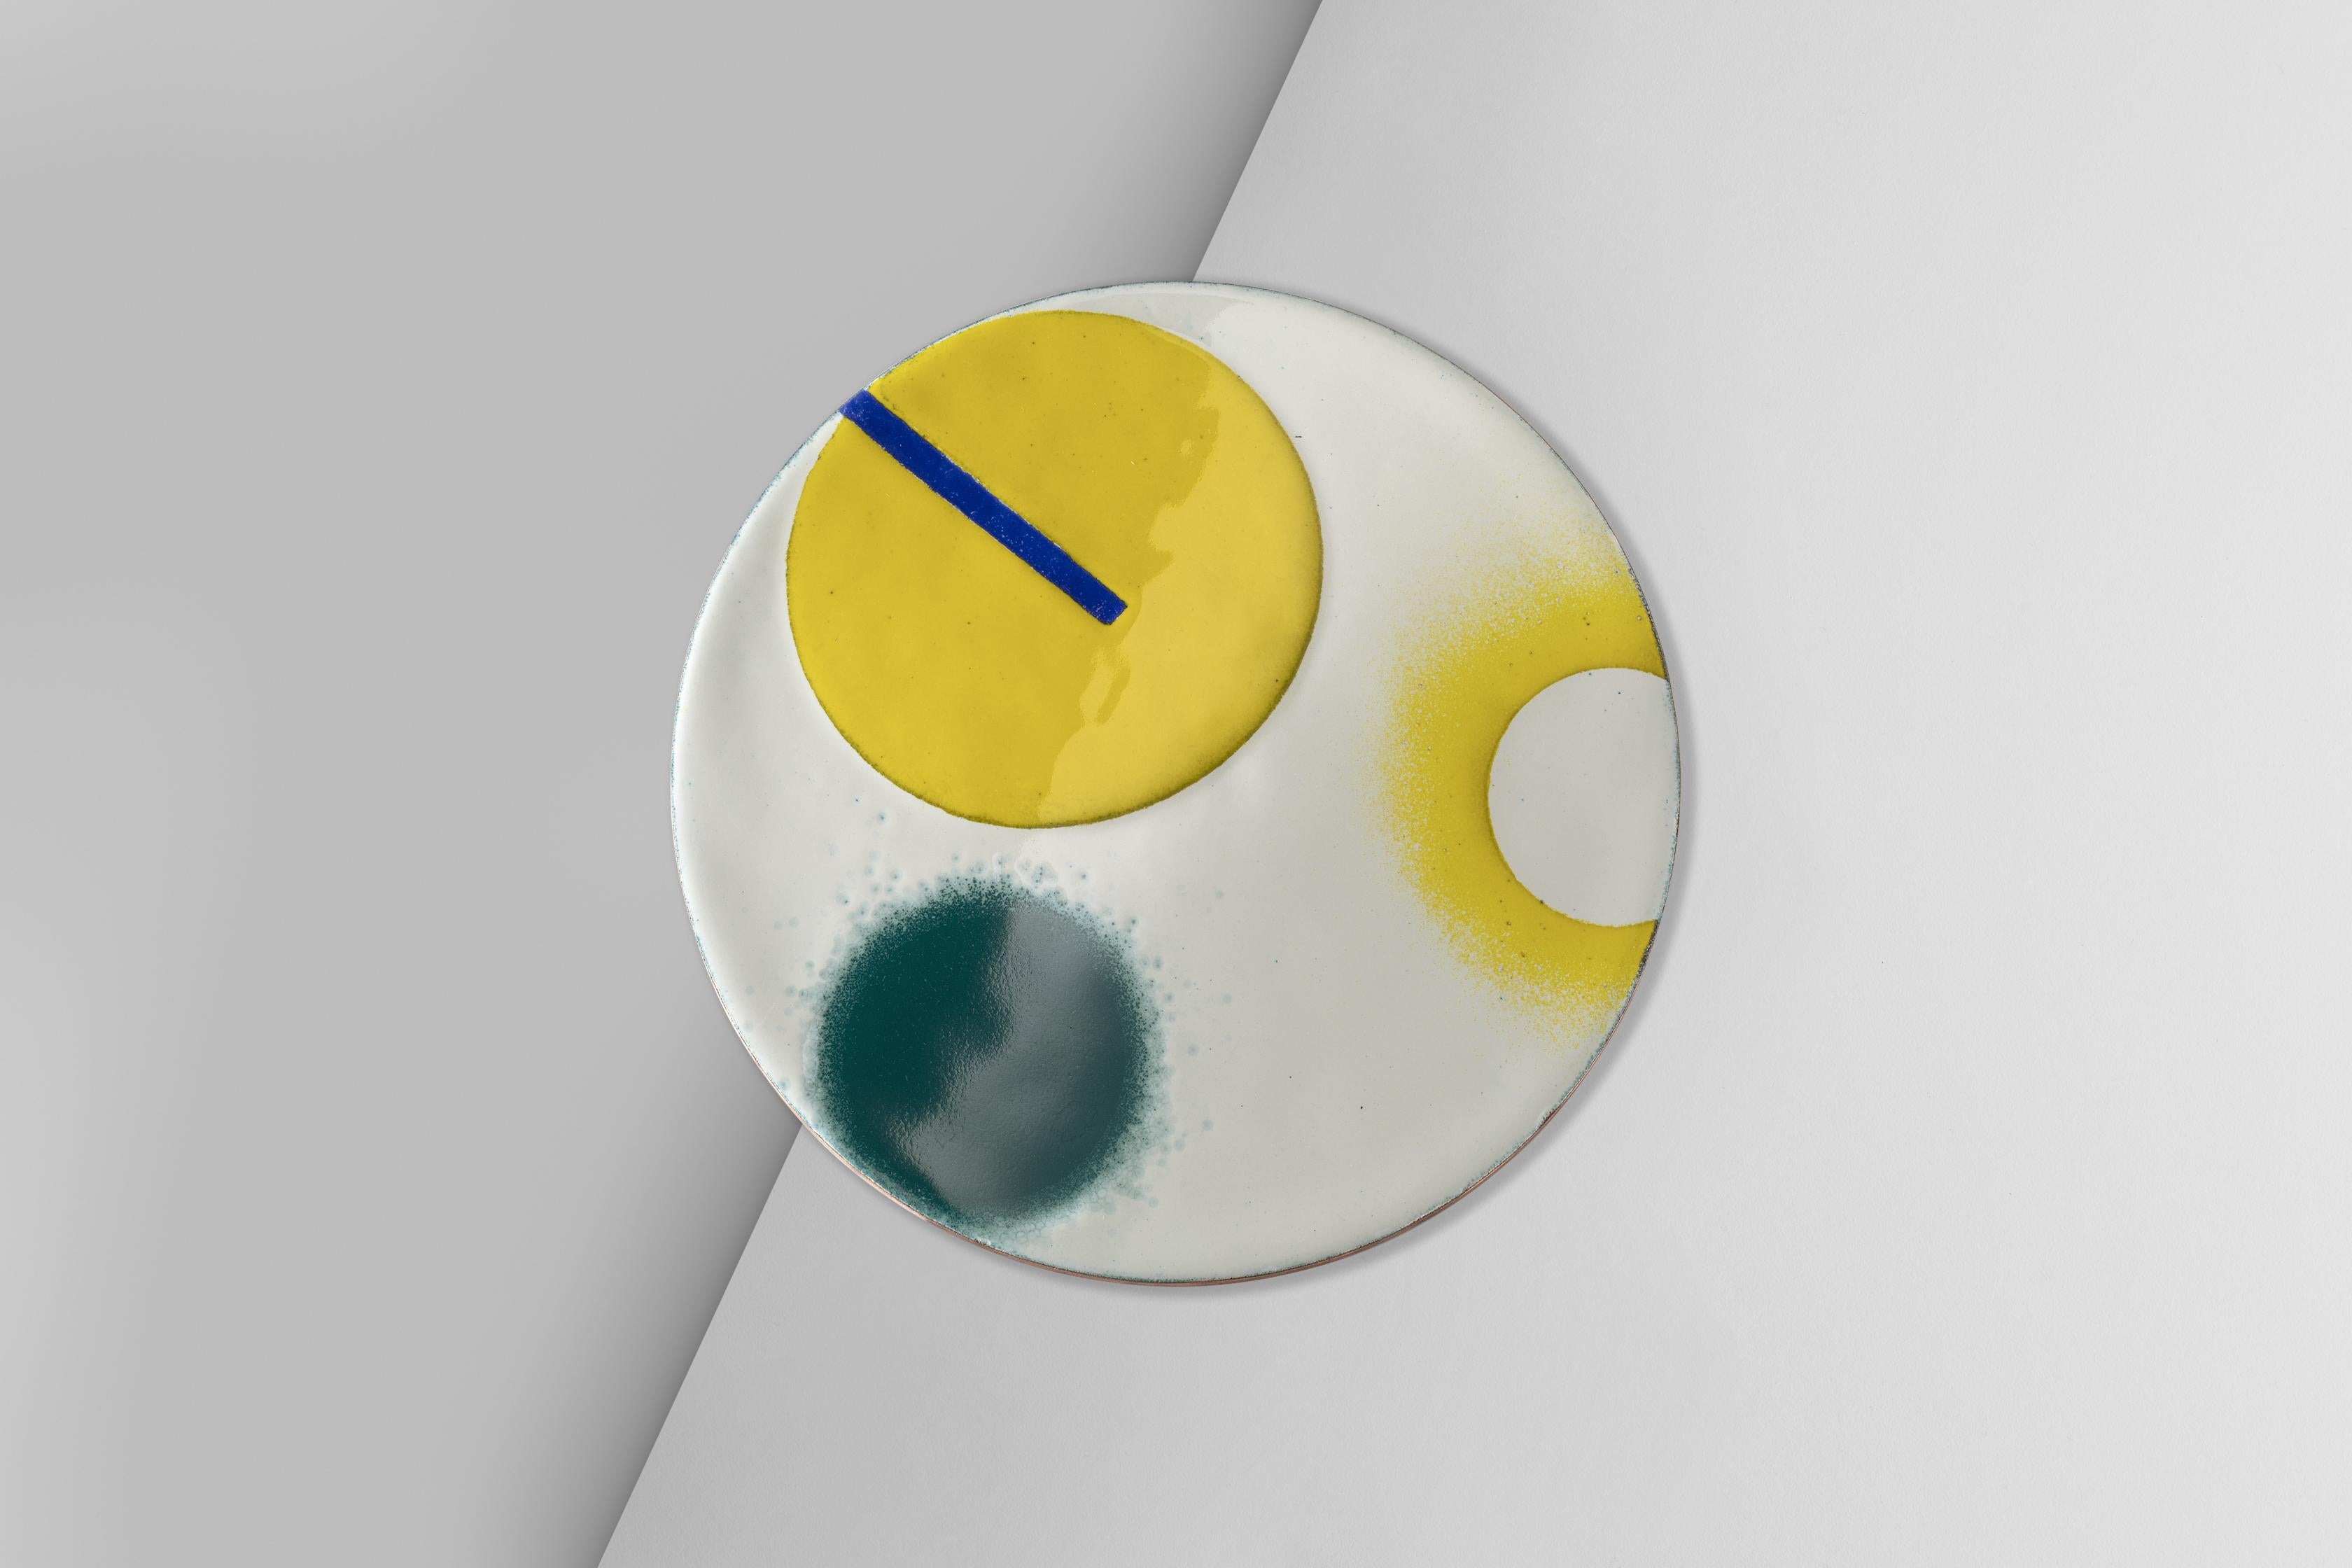 Collezione di piatti decorativi realizzati con la tecnica dello smalto a fuoco su rame. I colori e i motivi provengono da una visita al Guggenheim Museum di New York, mentre la tecnica è un tributo al design italiano degli anni '50, '60 e '70. Il